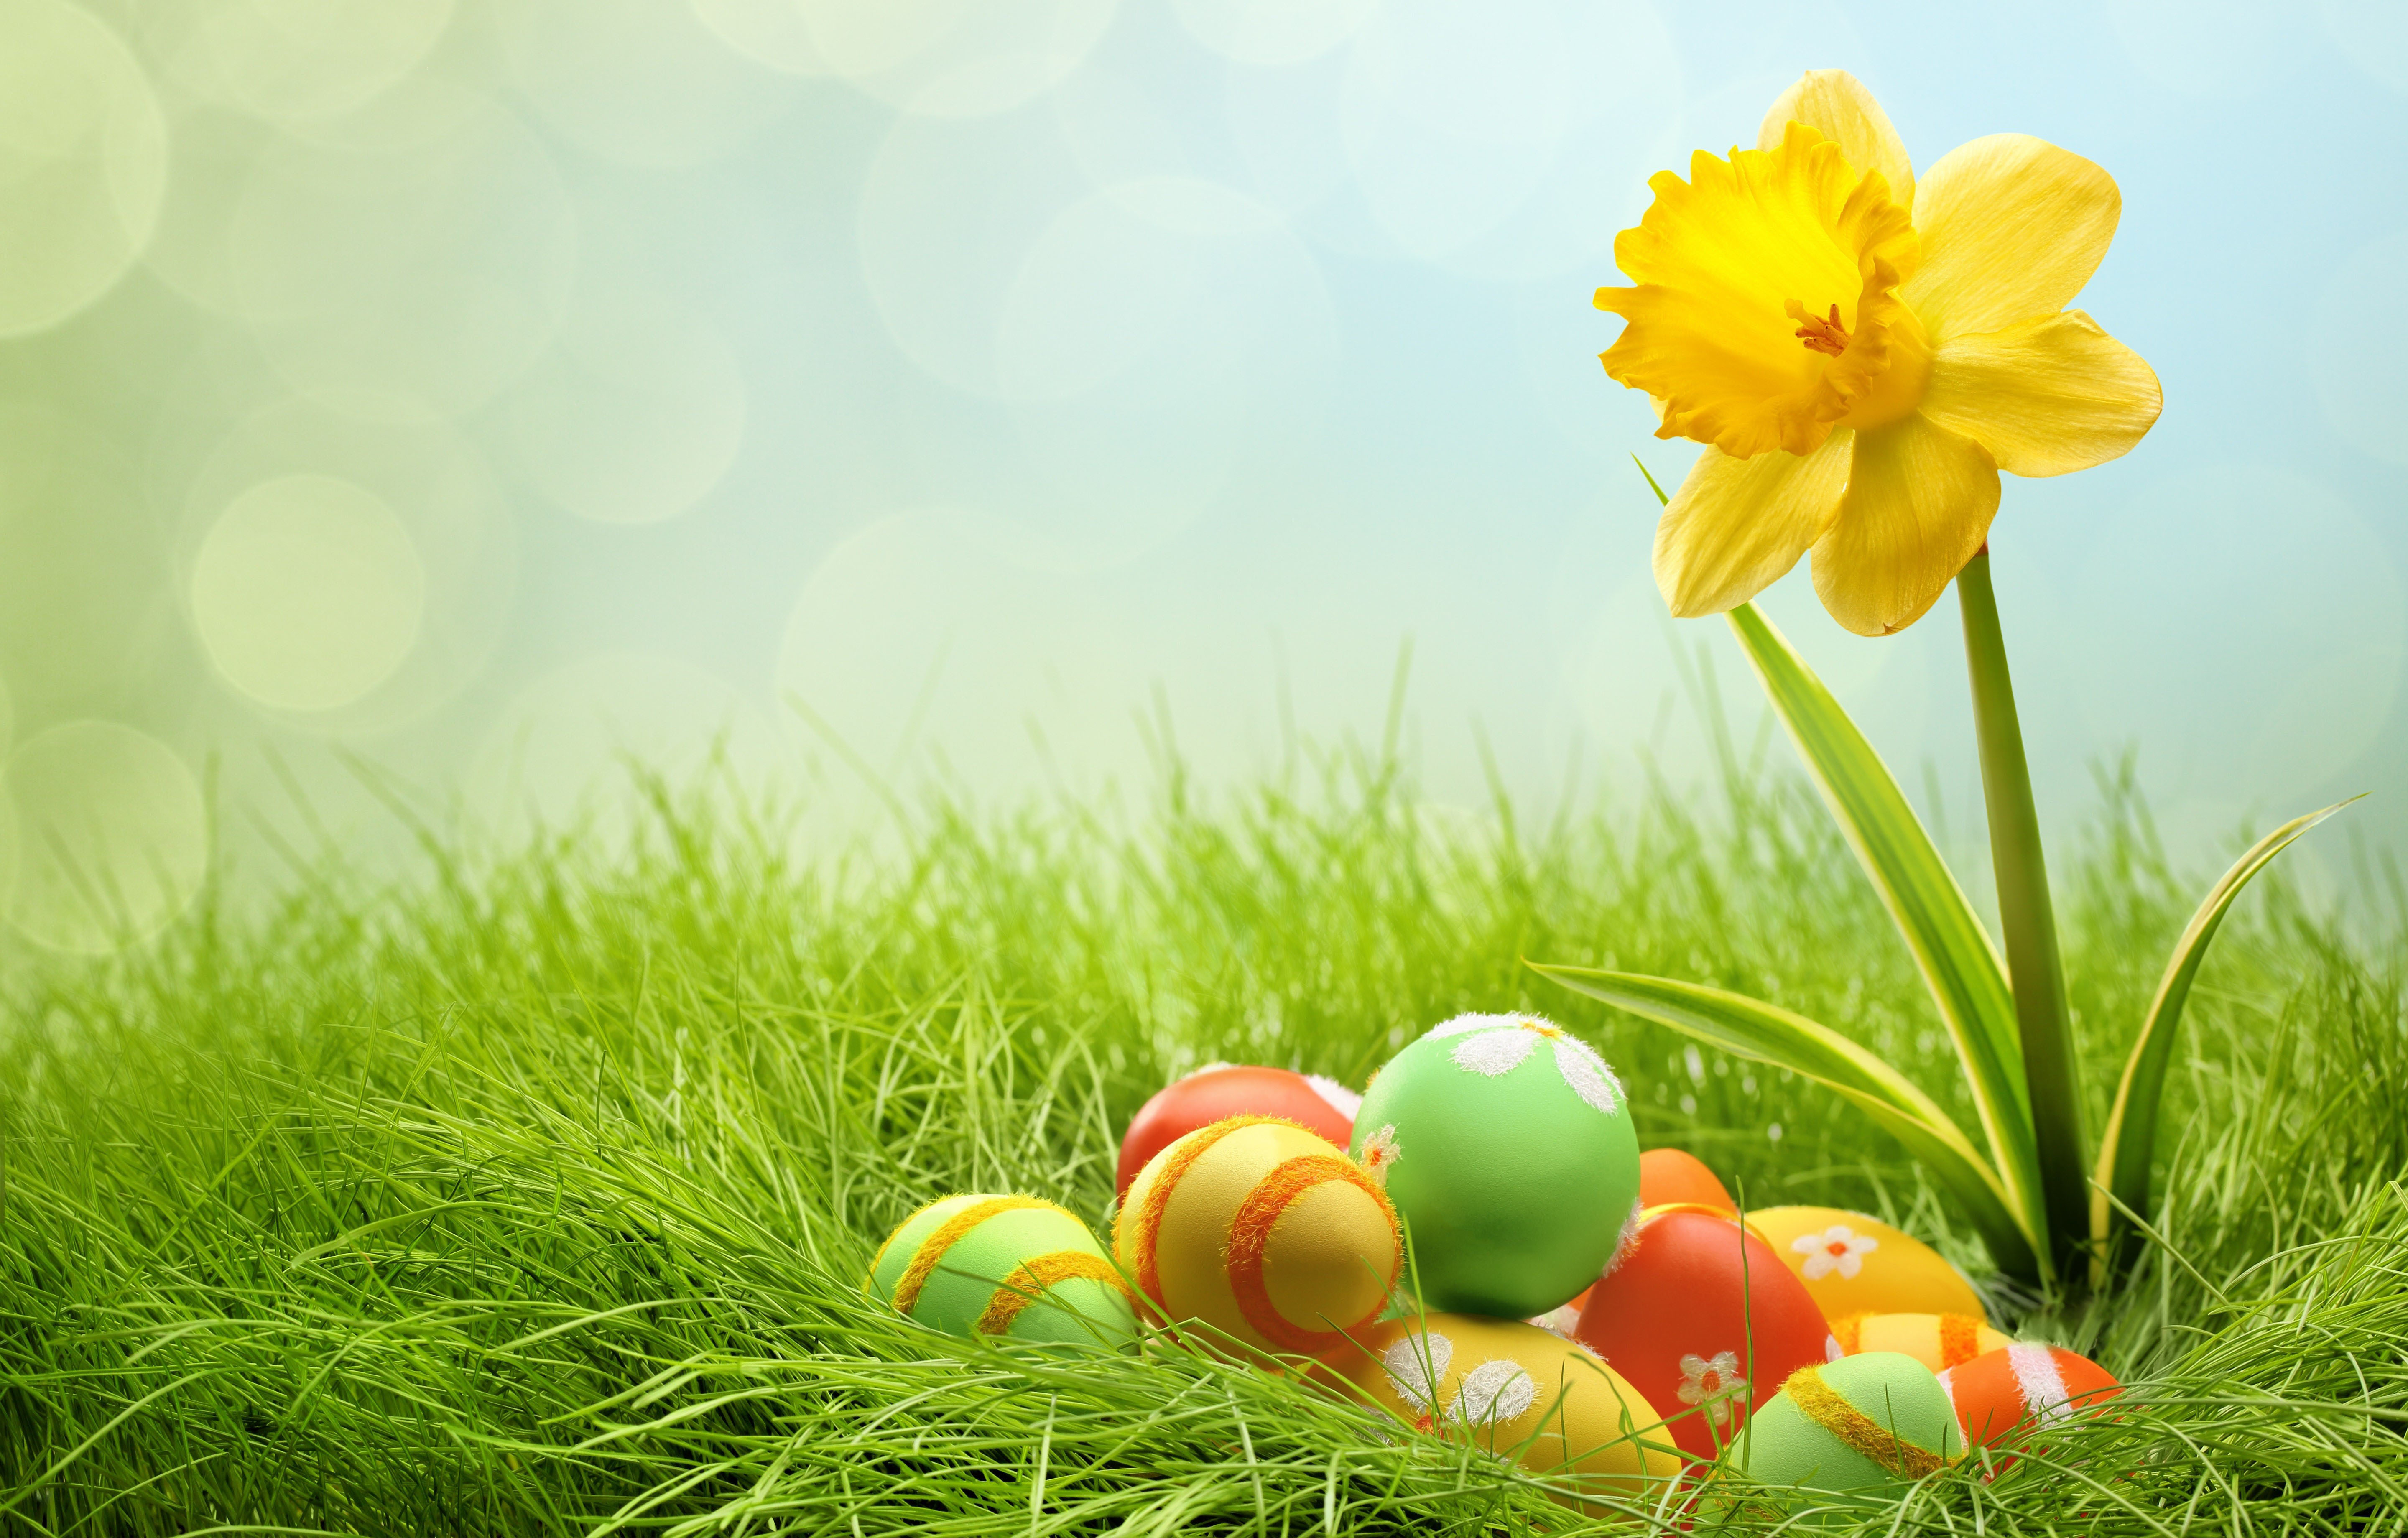 Eggs And Yellow Flower For Easter Desktop Wallpaper